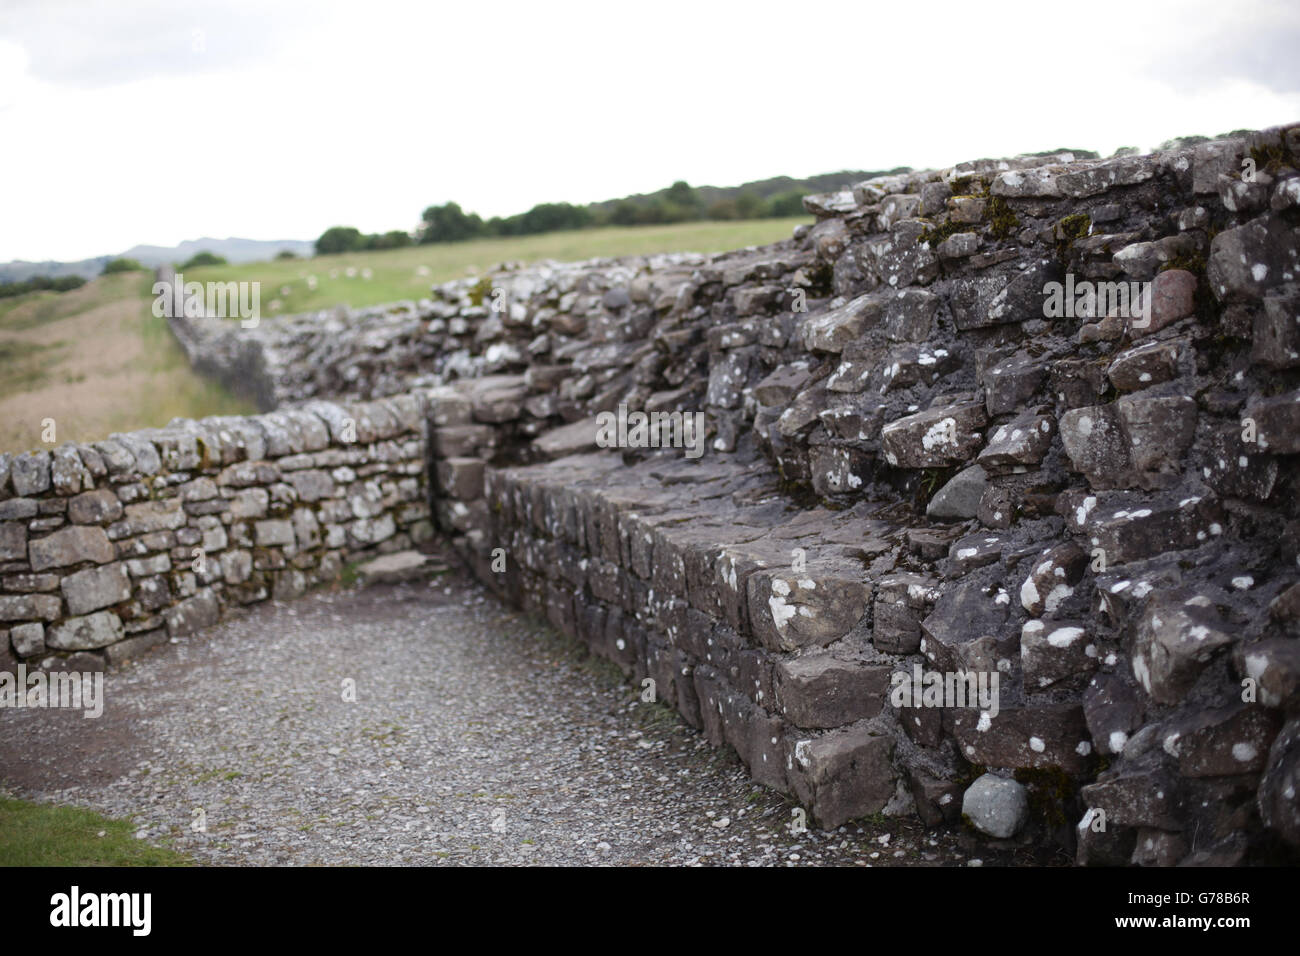 Una sezione del Muro di Adriano vicino al Forte romano di Birdoswald in Cumbria. PREMERE ASSOCIAZIONE foto. Data immagine: Mercoledì 16 luglio 2014. Il credito fotografico dovrebbe essere: Filo Yui Mok/PA Foto Stock